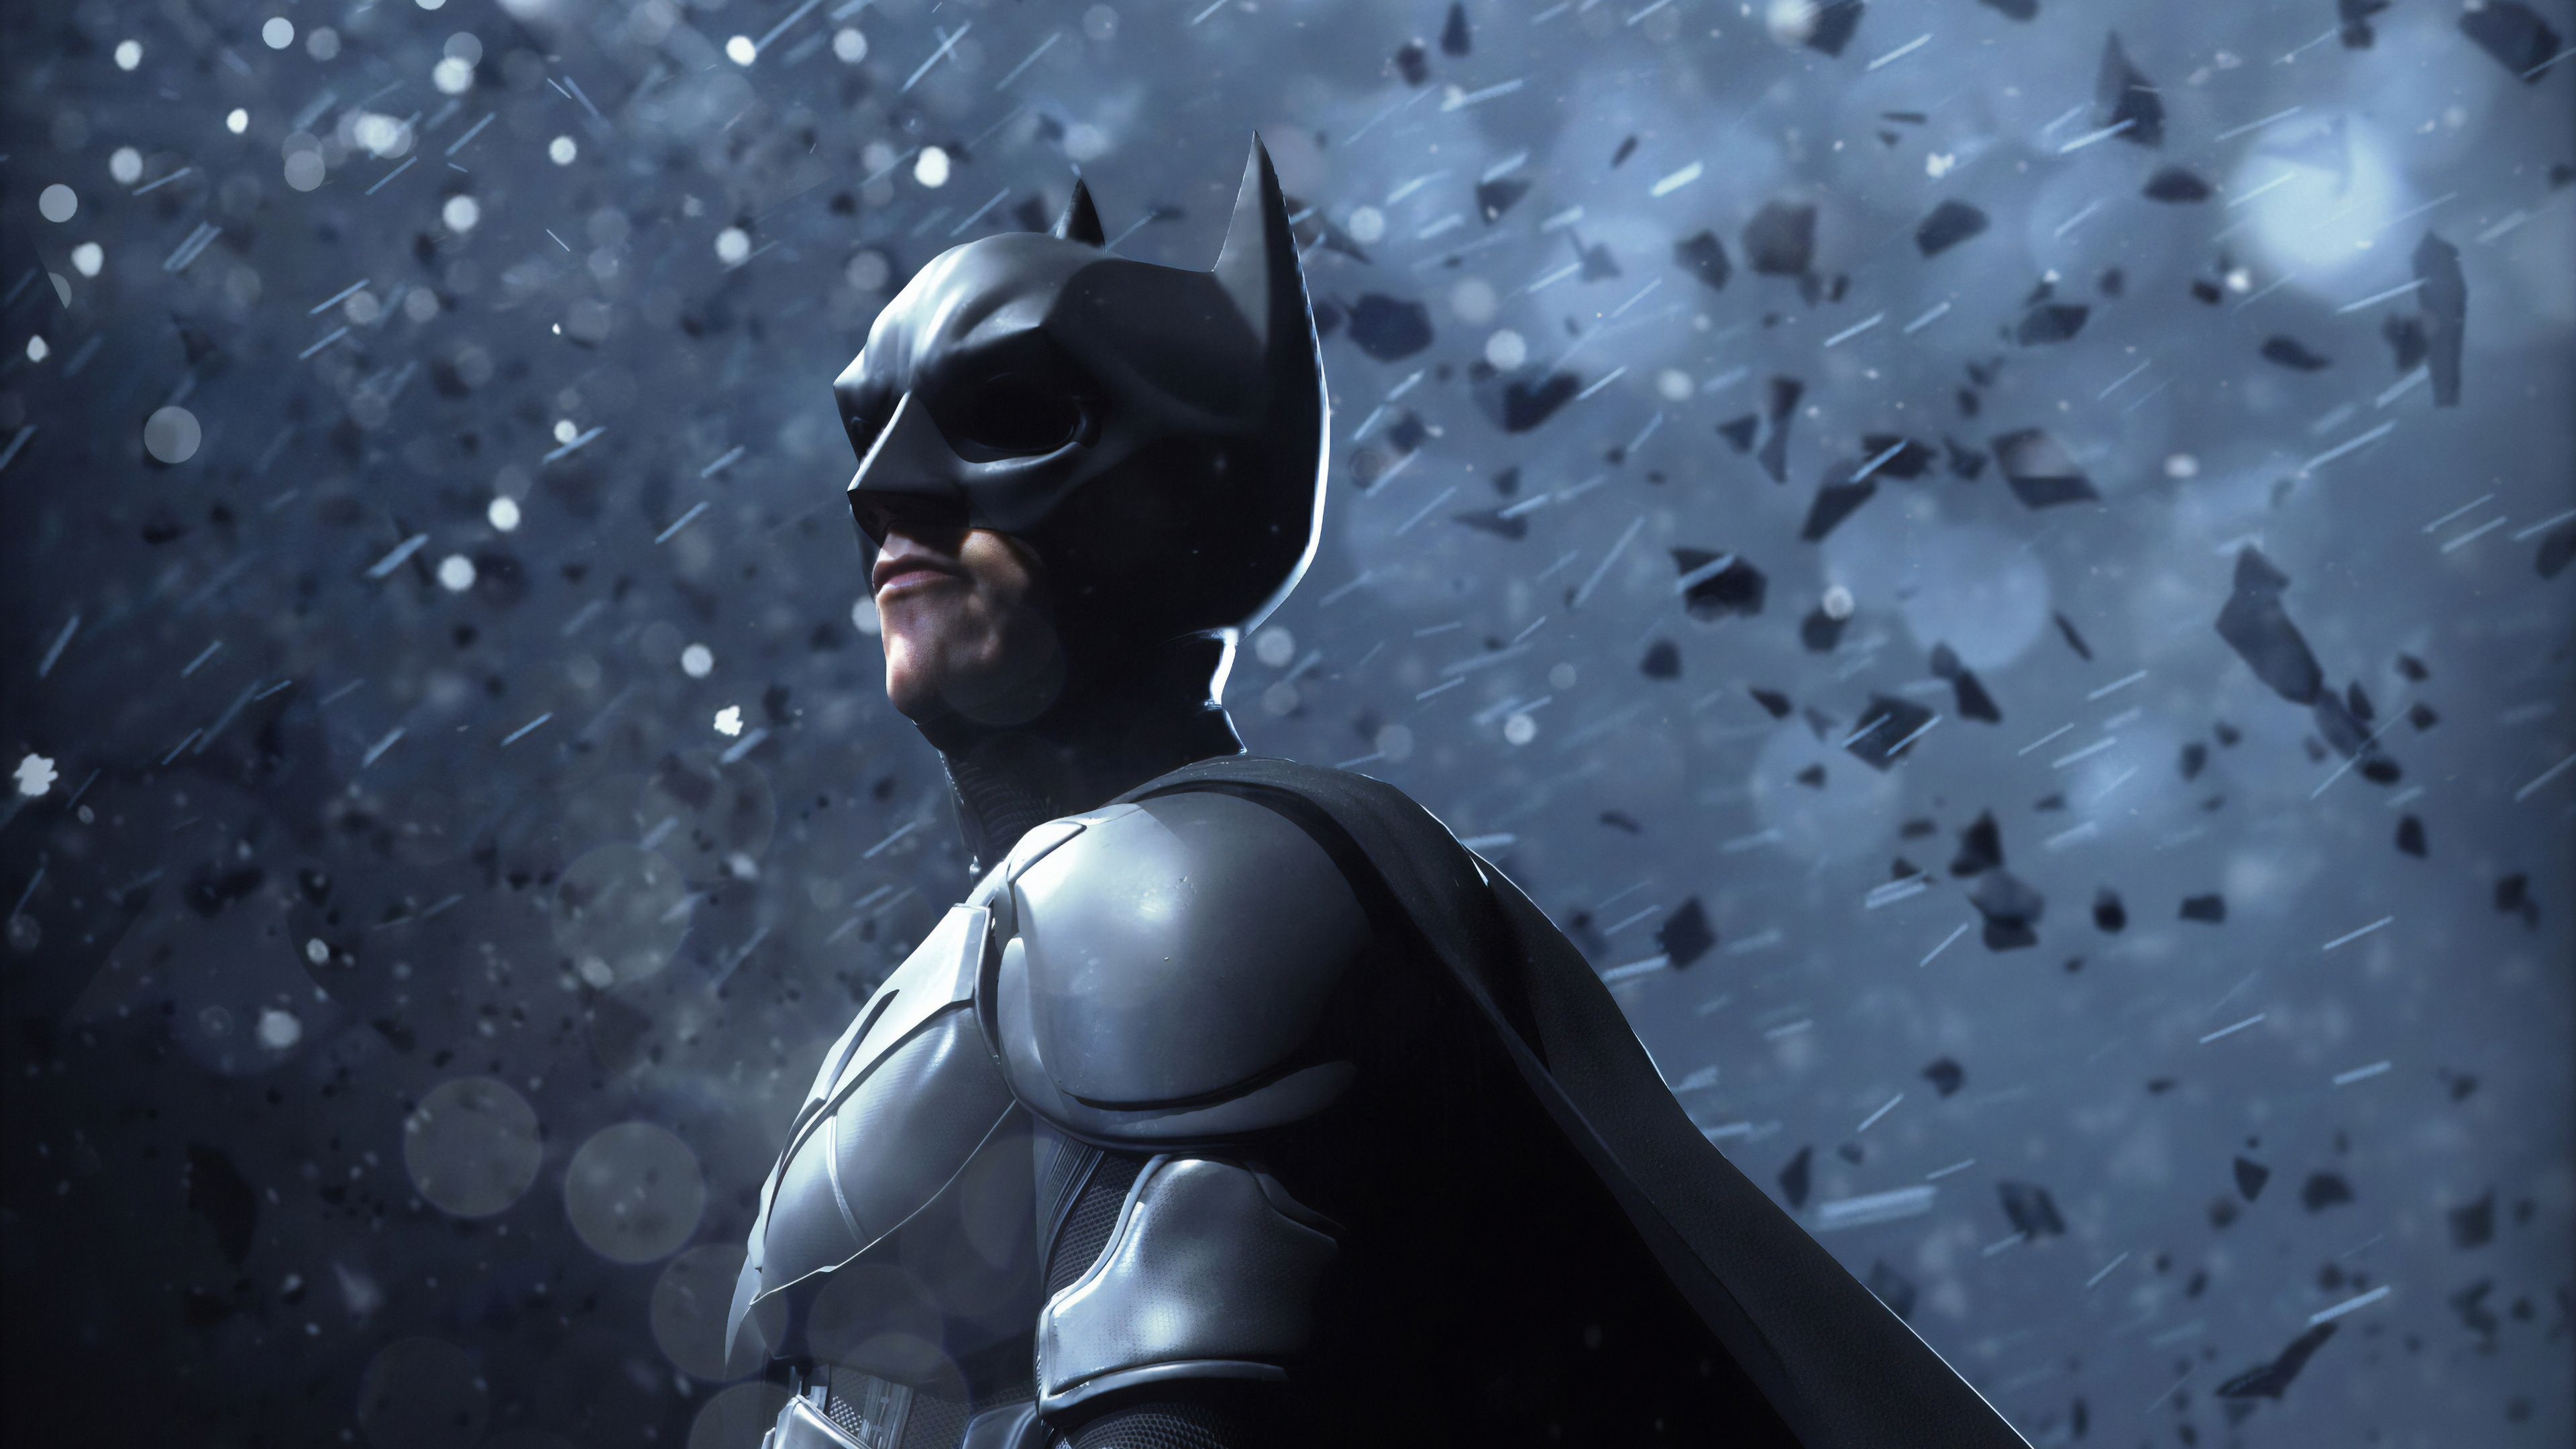 1080p Image: Batman Dark Knight Joker Wallpaper 4k